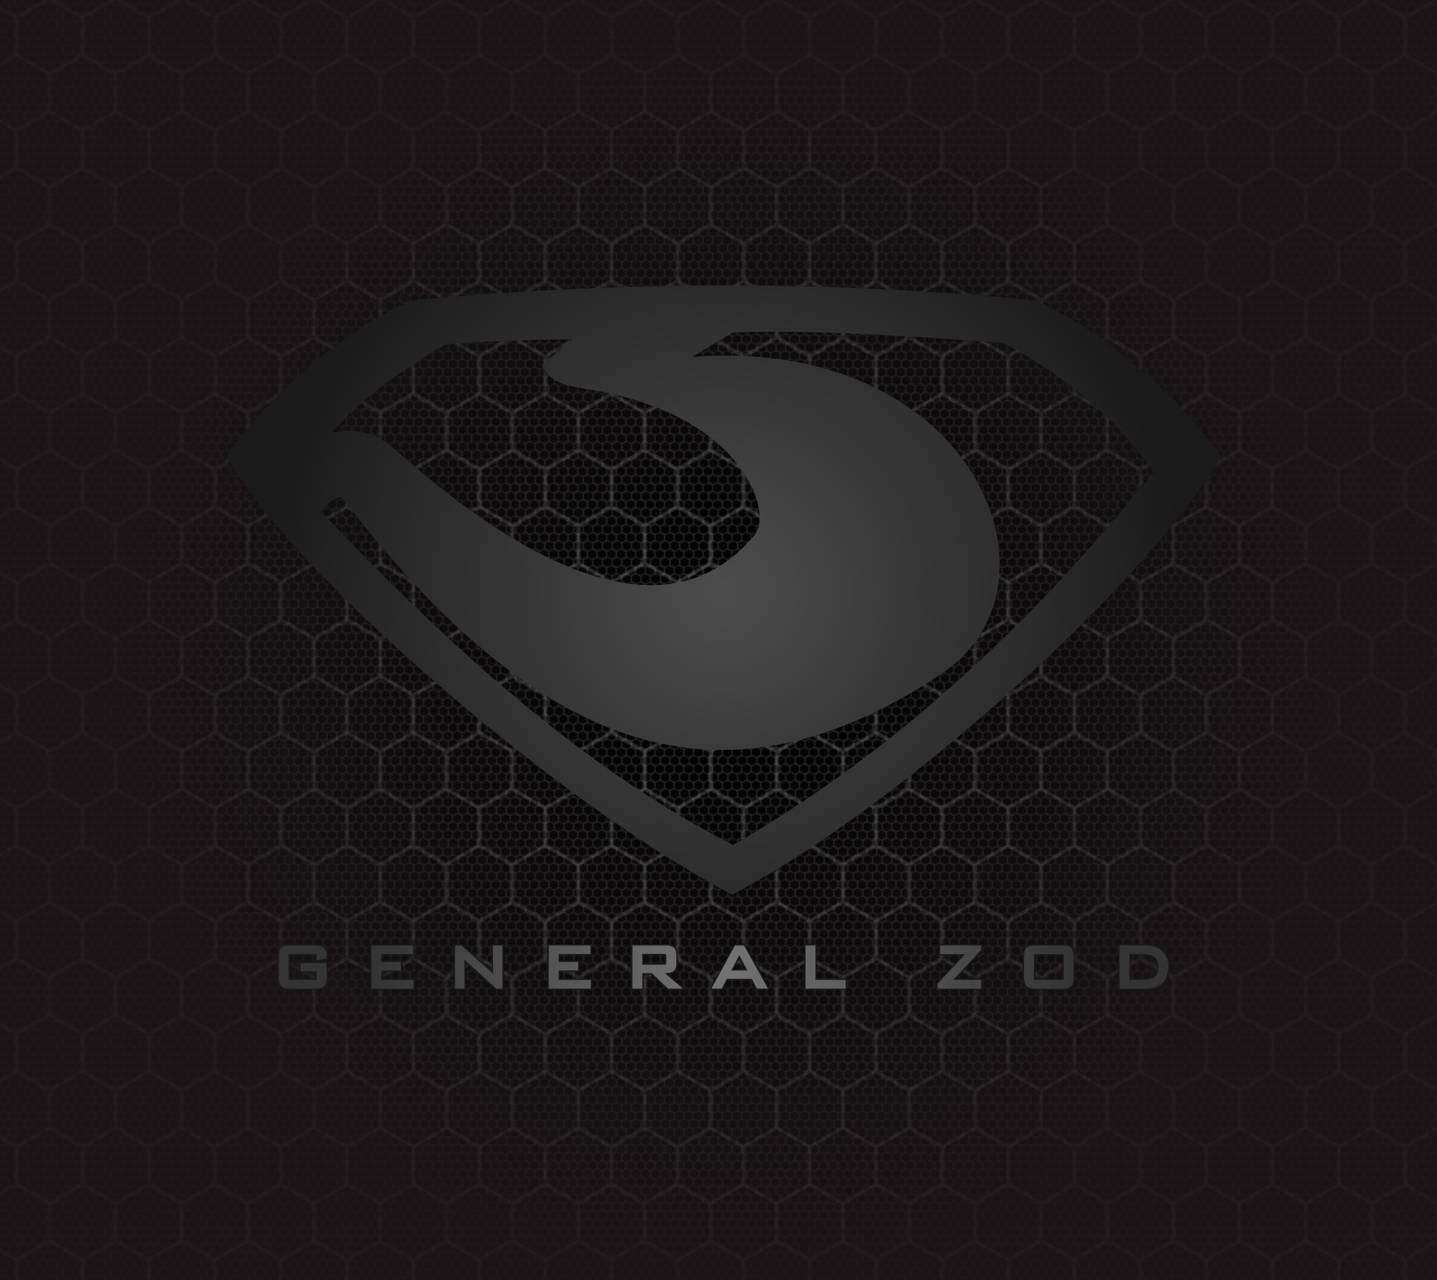 Zod Logo - general zod logo Wallpaper by lilboy35 - 21 - Free on ZEDGE™